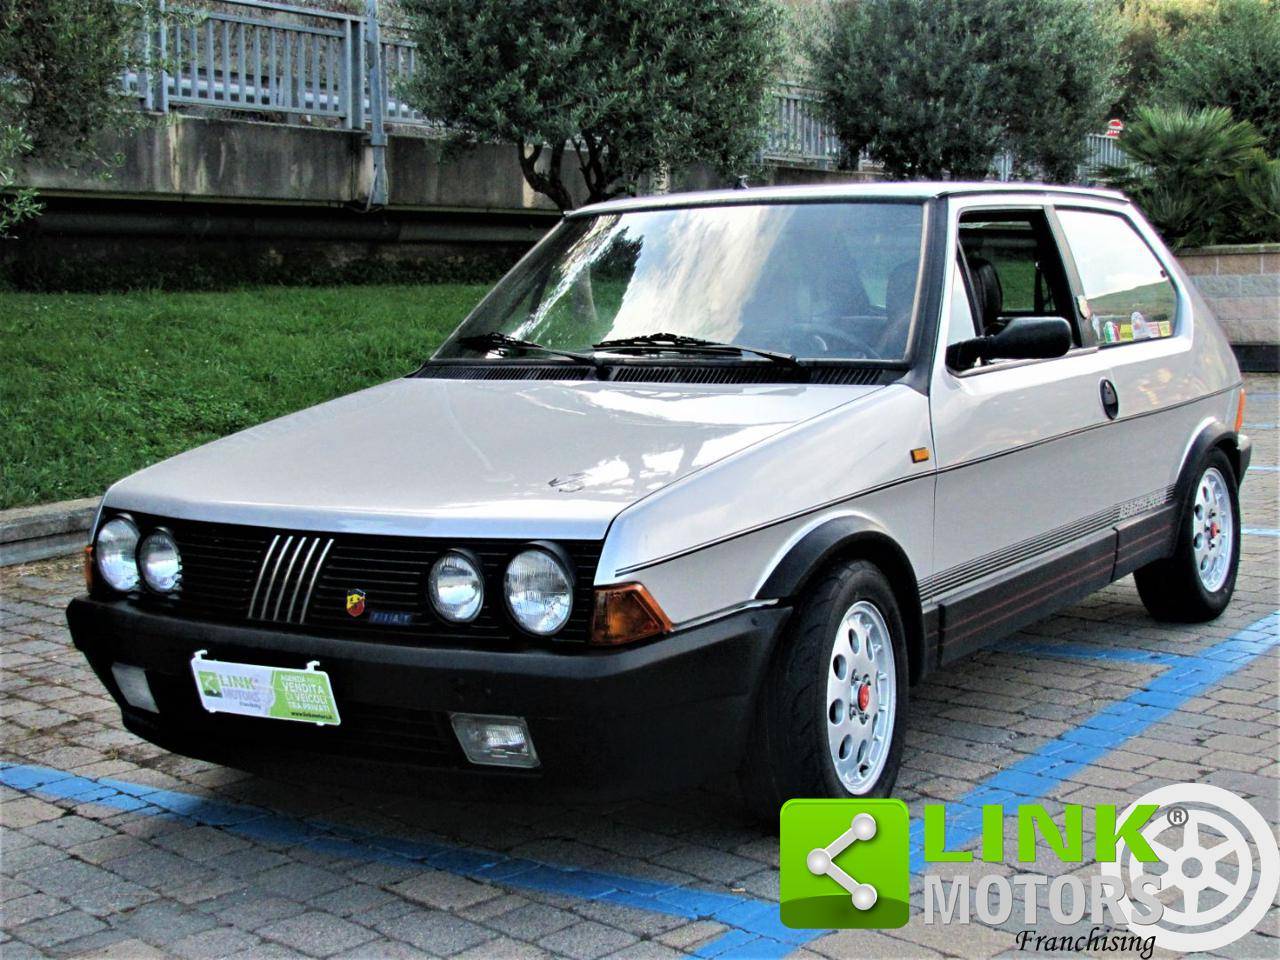 pindas spade Peuter Te koop: FIAT Ritmo 130 TC Abarth (1983) aangeboden voor € 22.500